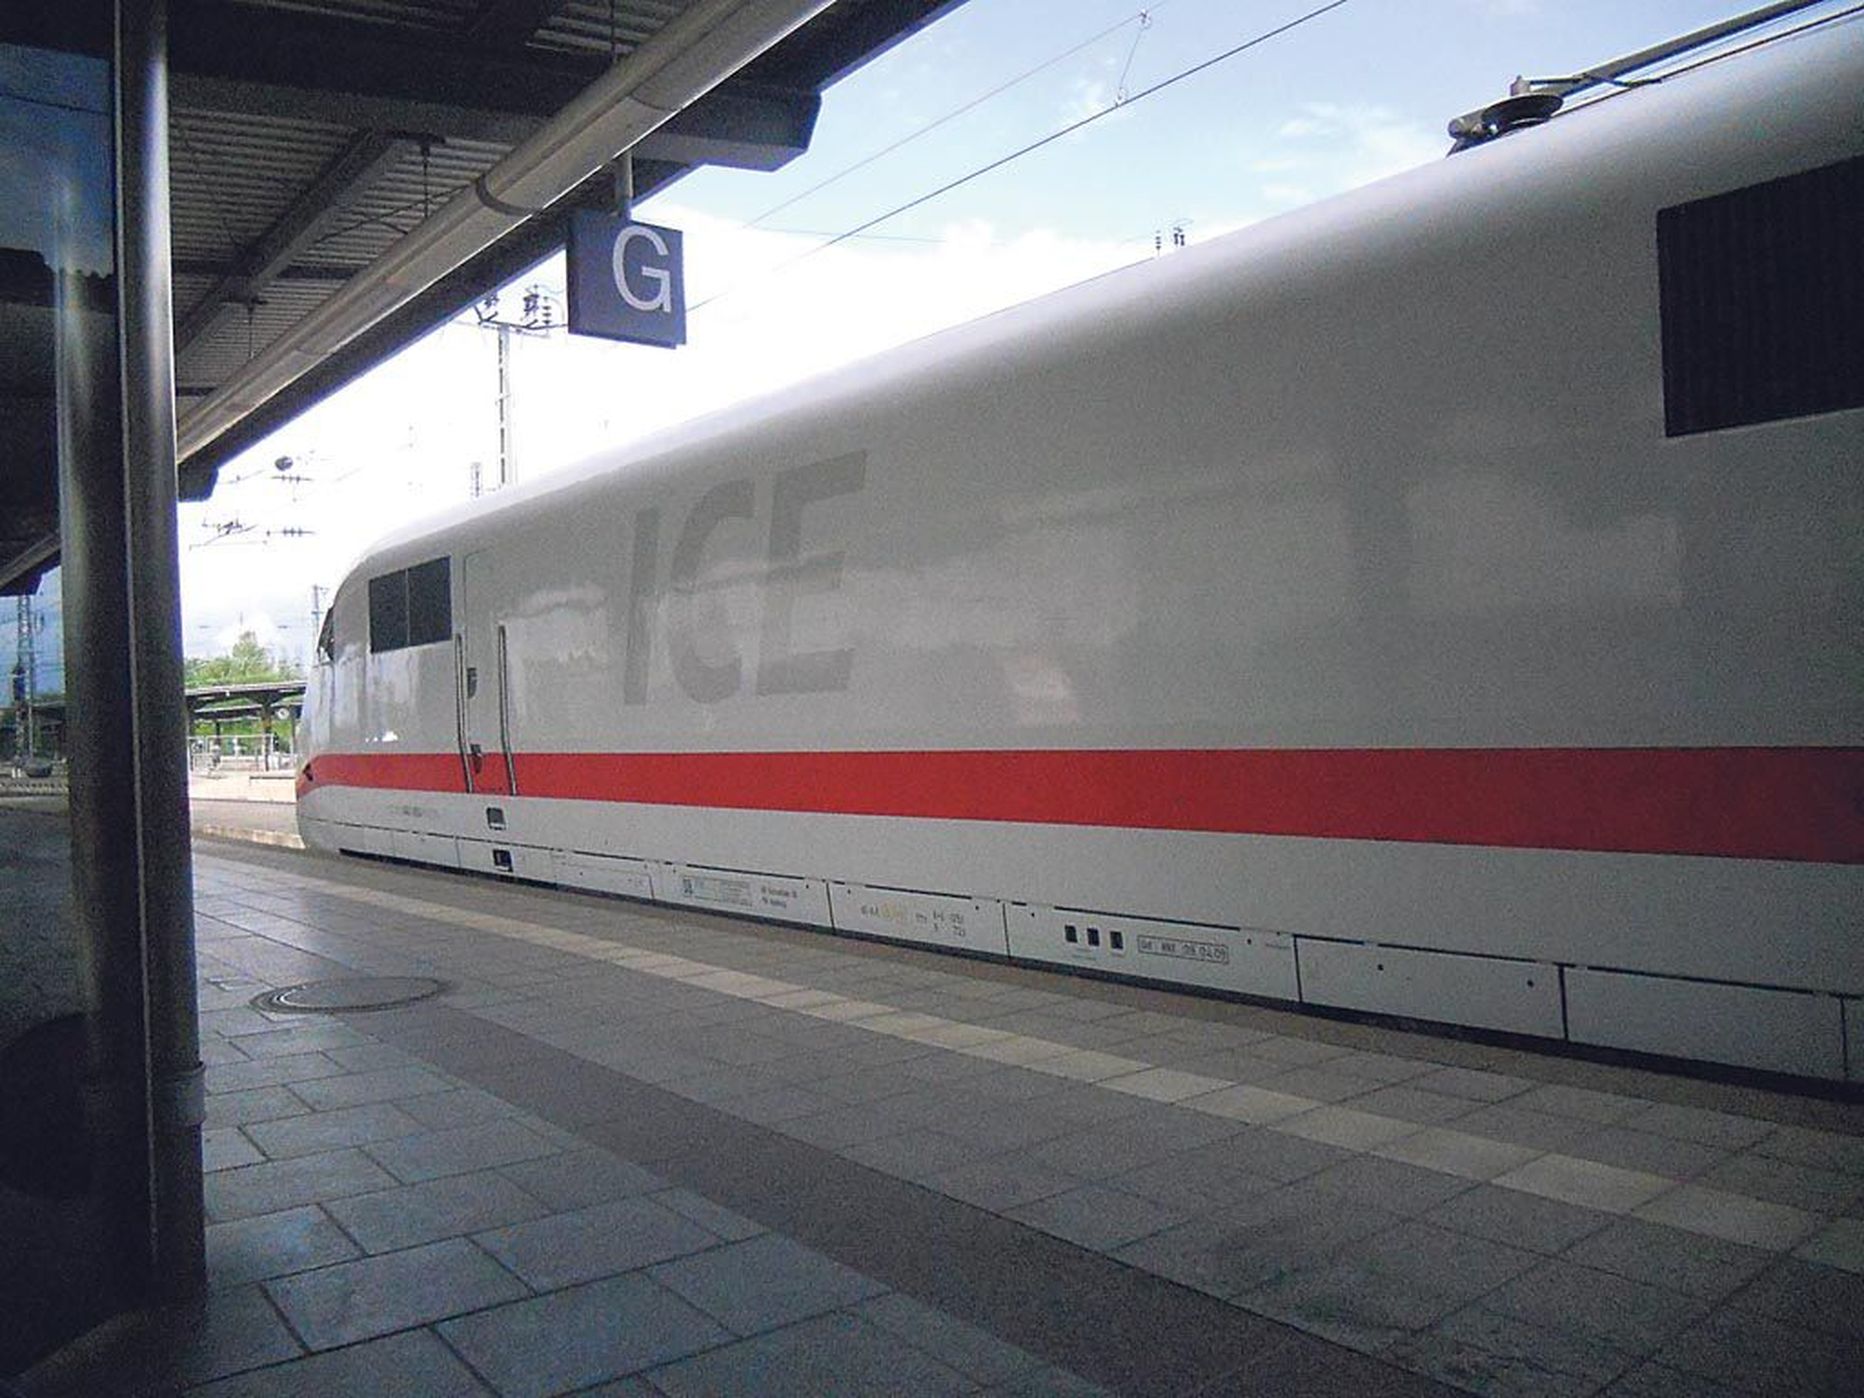 ICE kiirronge sõidab Saksamaa raudteedel viis mudelit. ICEsid nimetatakse nii Saksamaa kui Euroopa kiireimateks.